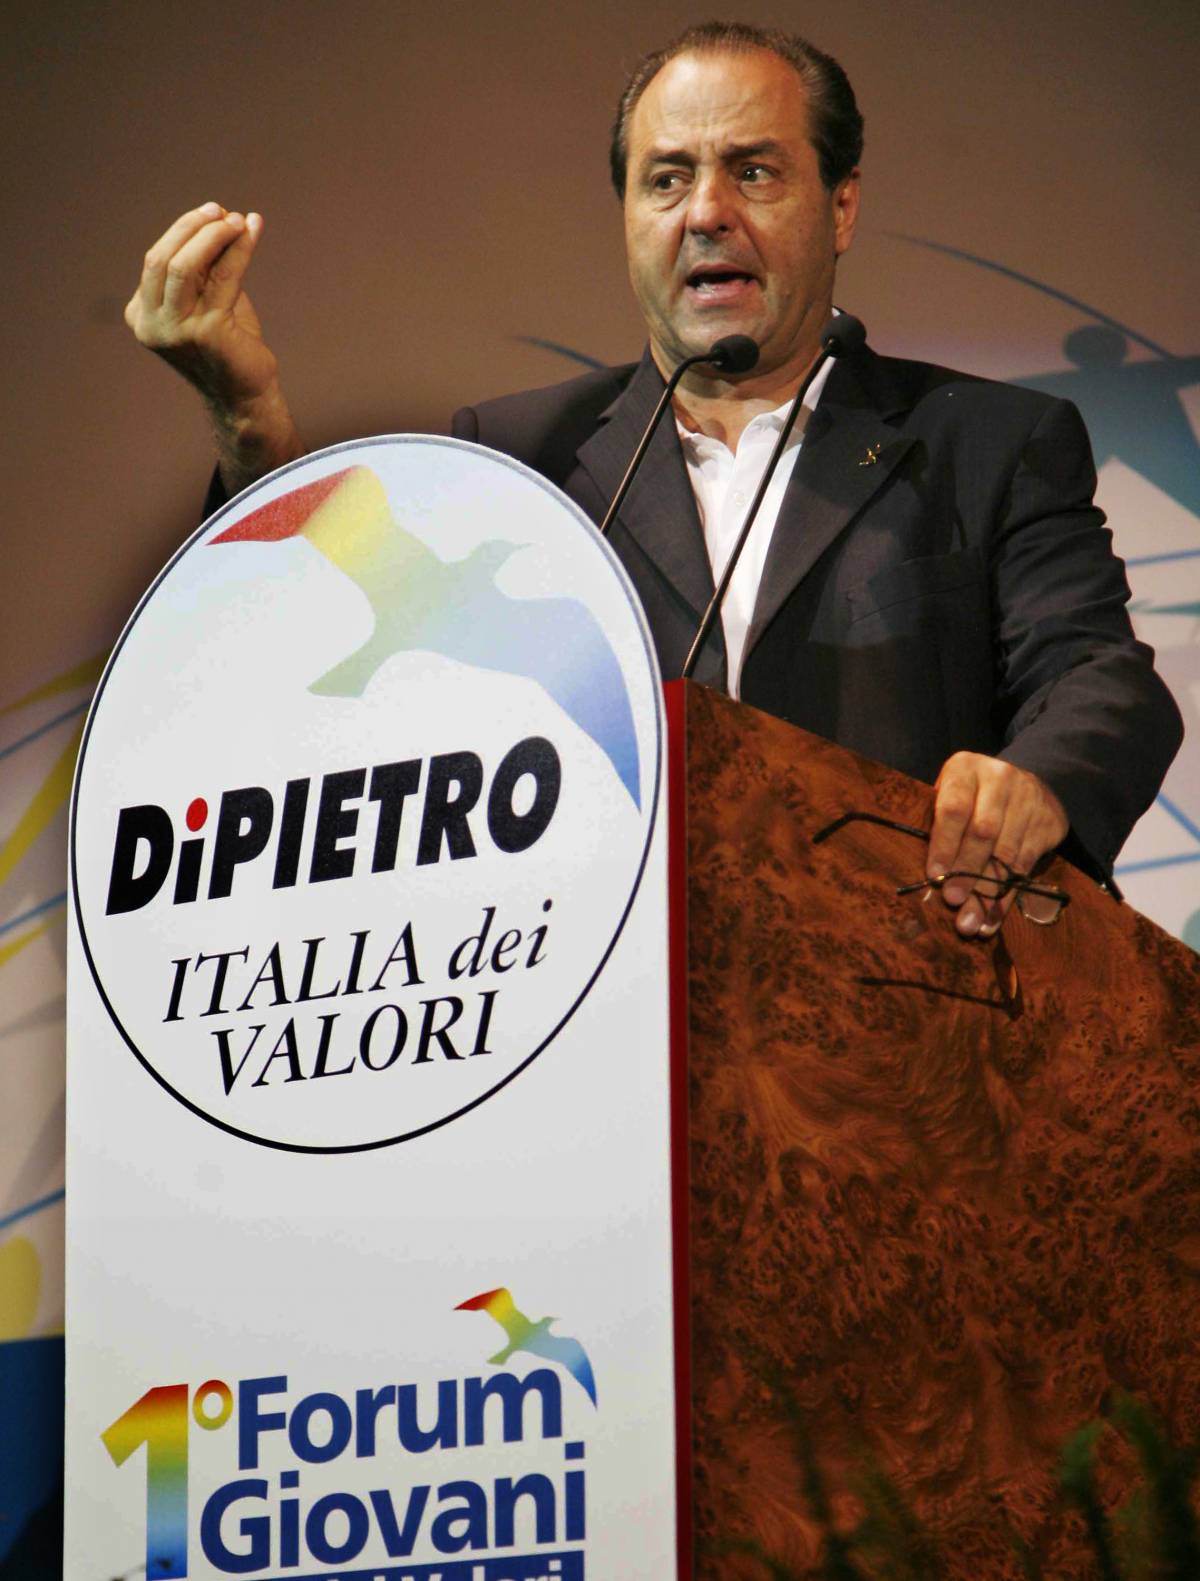 Colle, duro scontro tra Di Pietro e Bersani
 
Berlusconi attacca: Pd ammanettato all'ex pm